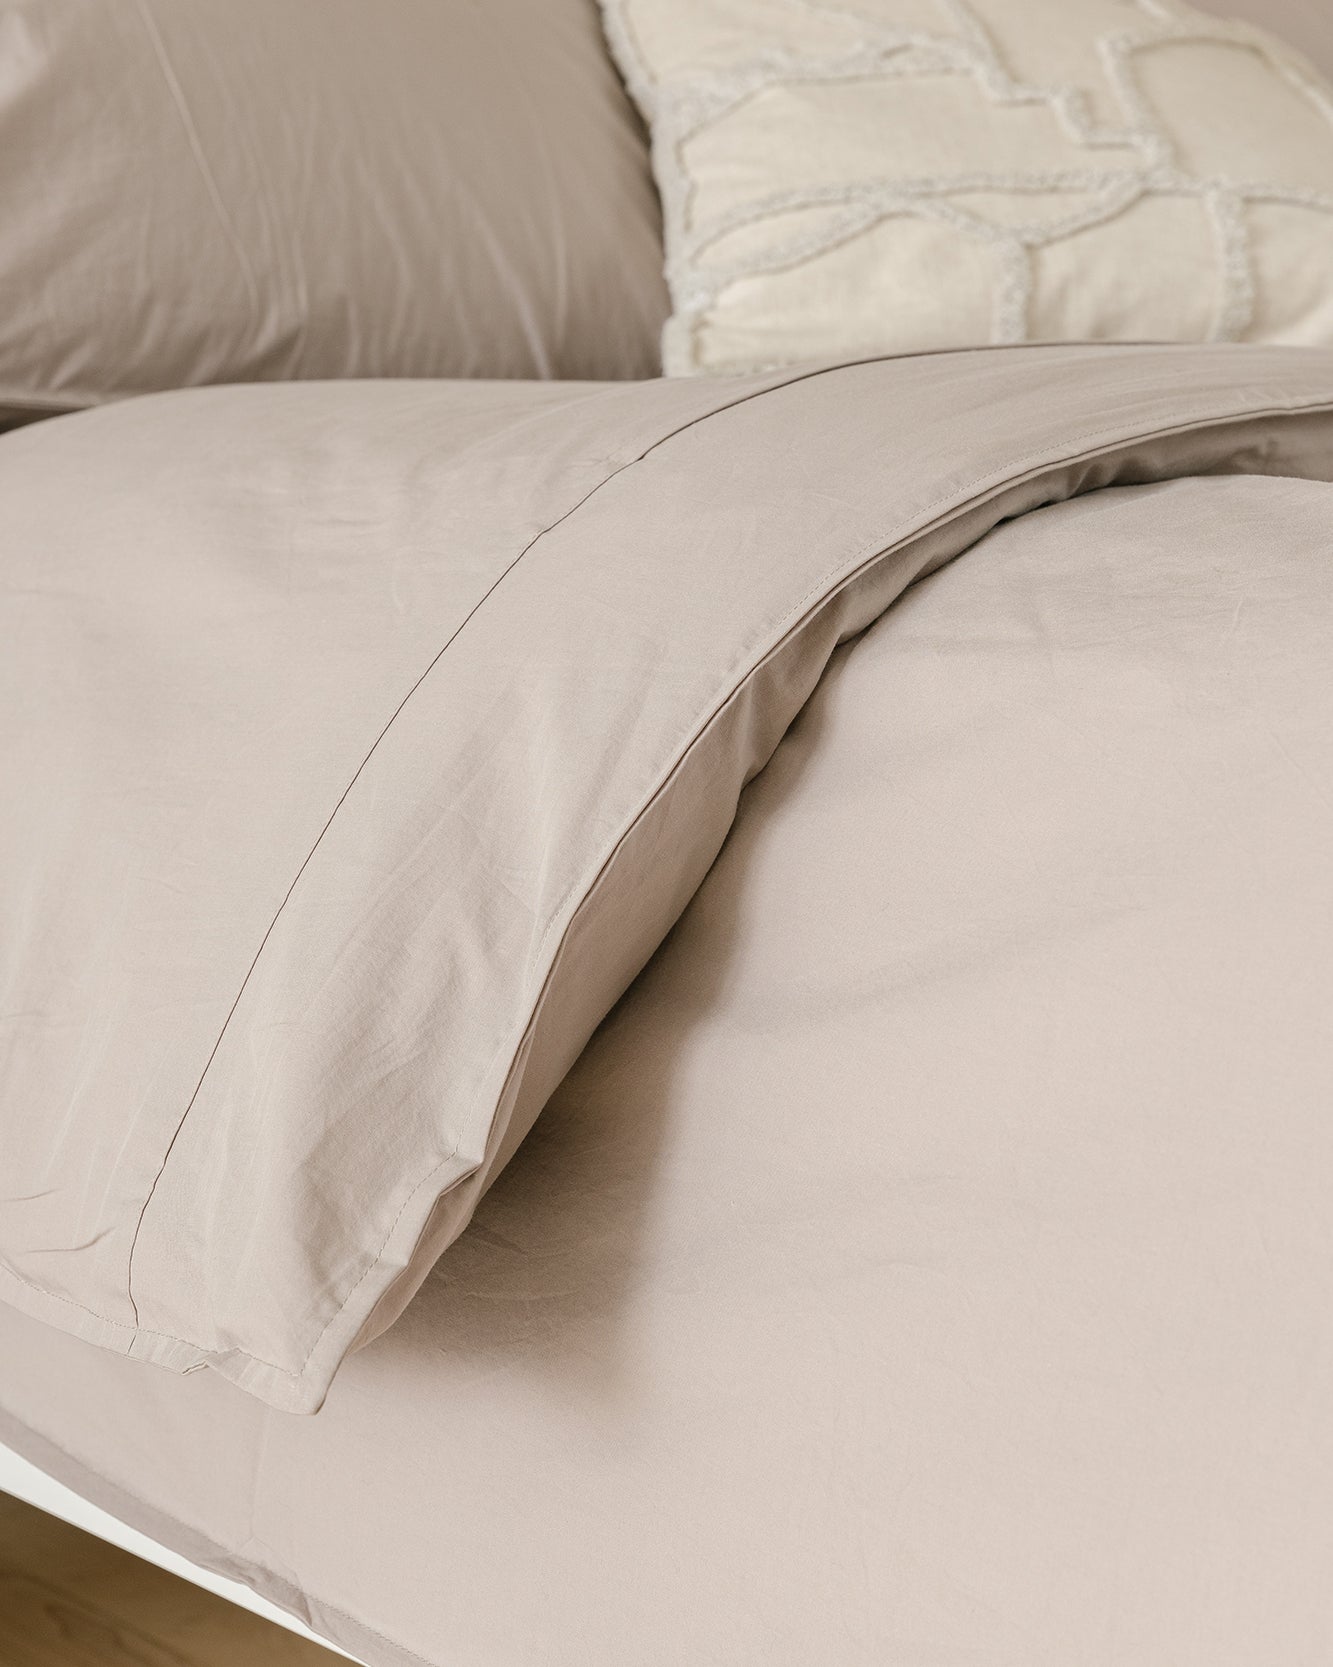 Woven Fabric 5-Piece Bedding Set (Duvet Cover, Fitted Sheet, Flat Sheet, Pillow Cases x2)